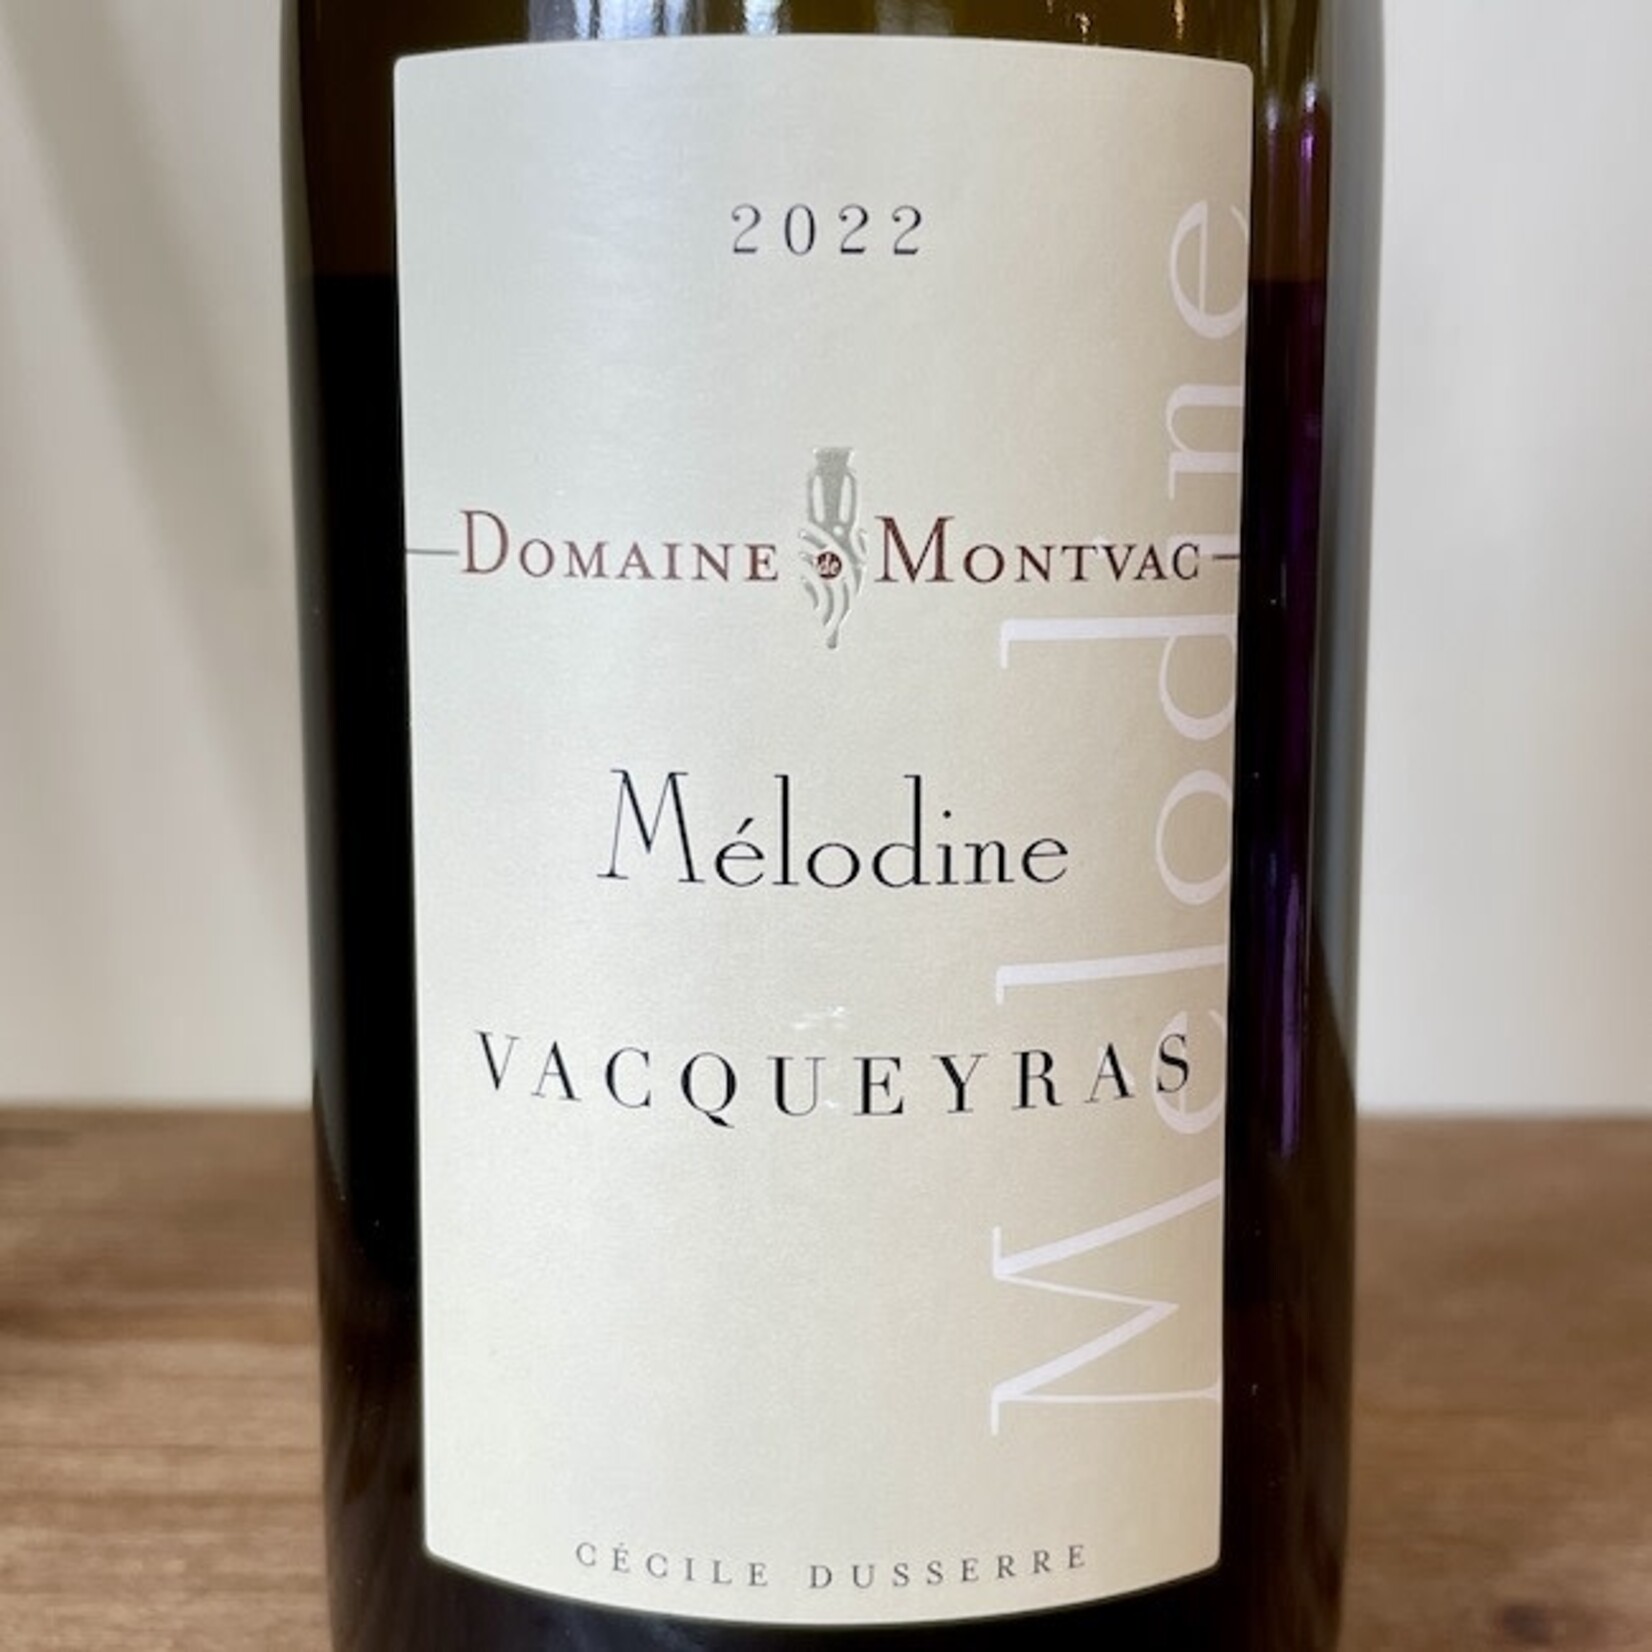 France 2021 Domaine de Montvac Vacqueyras Blanc "Melodine"